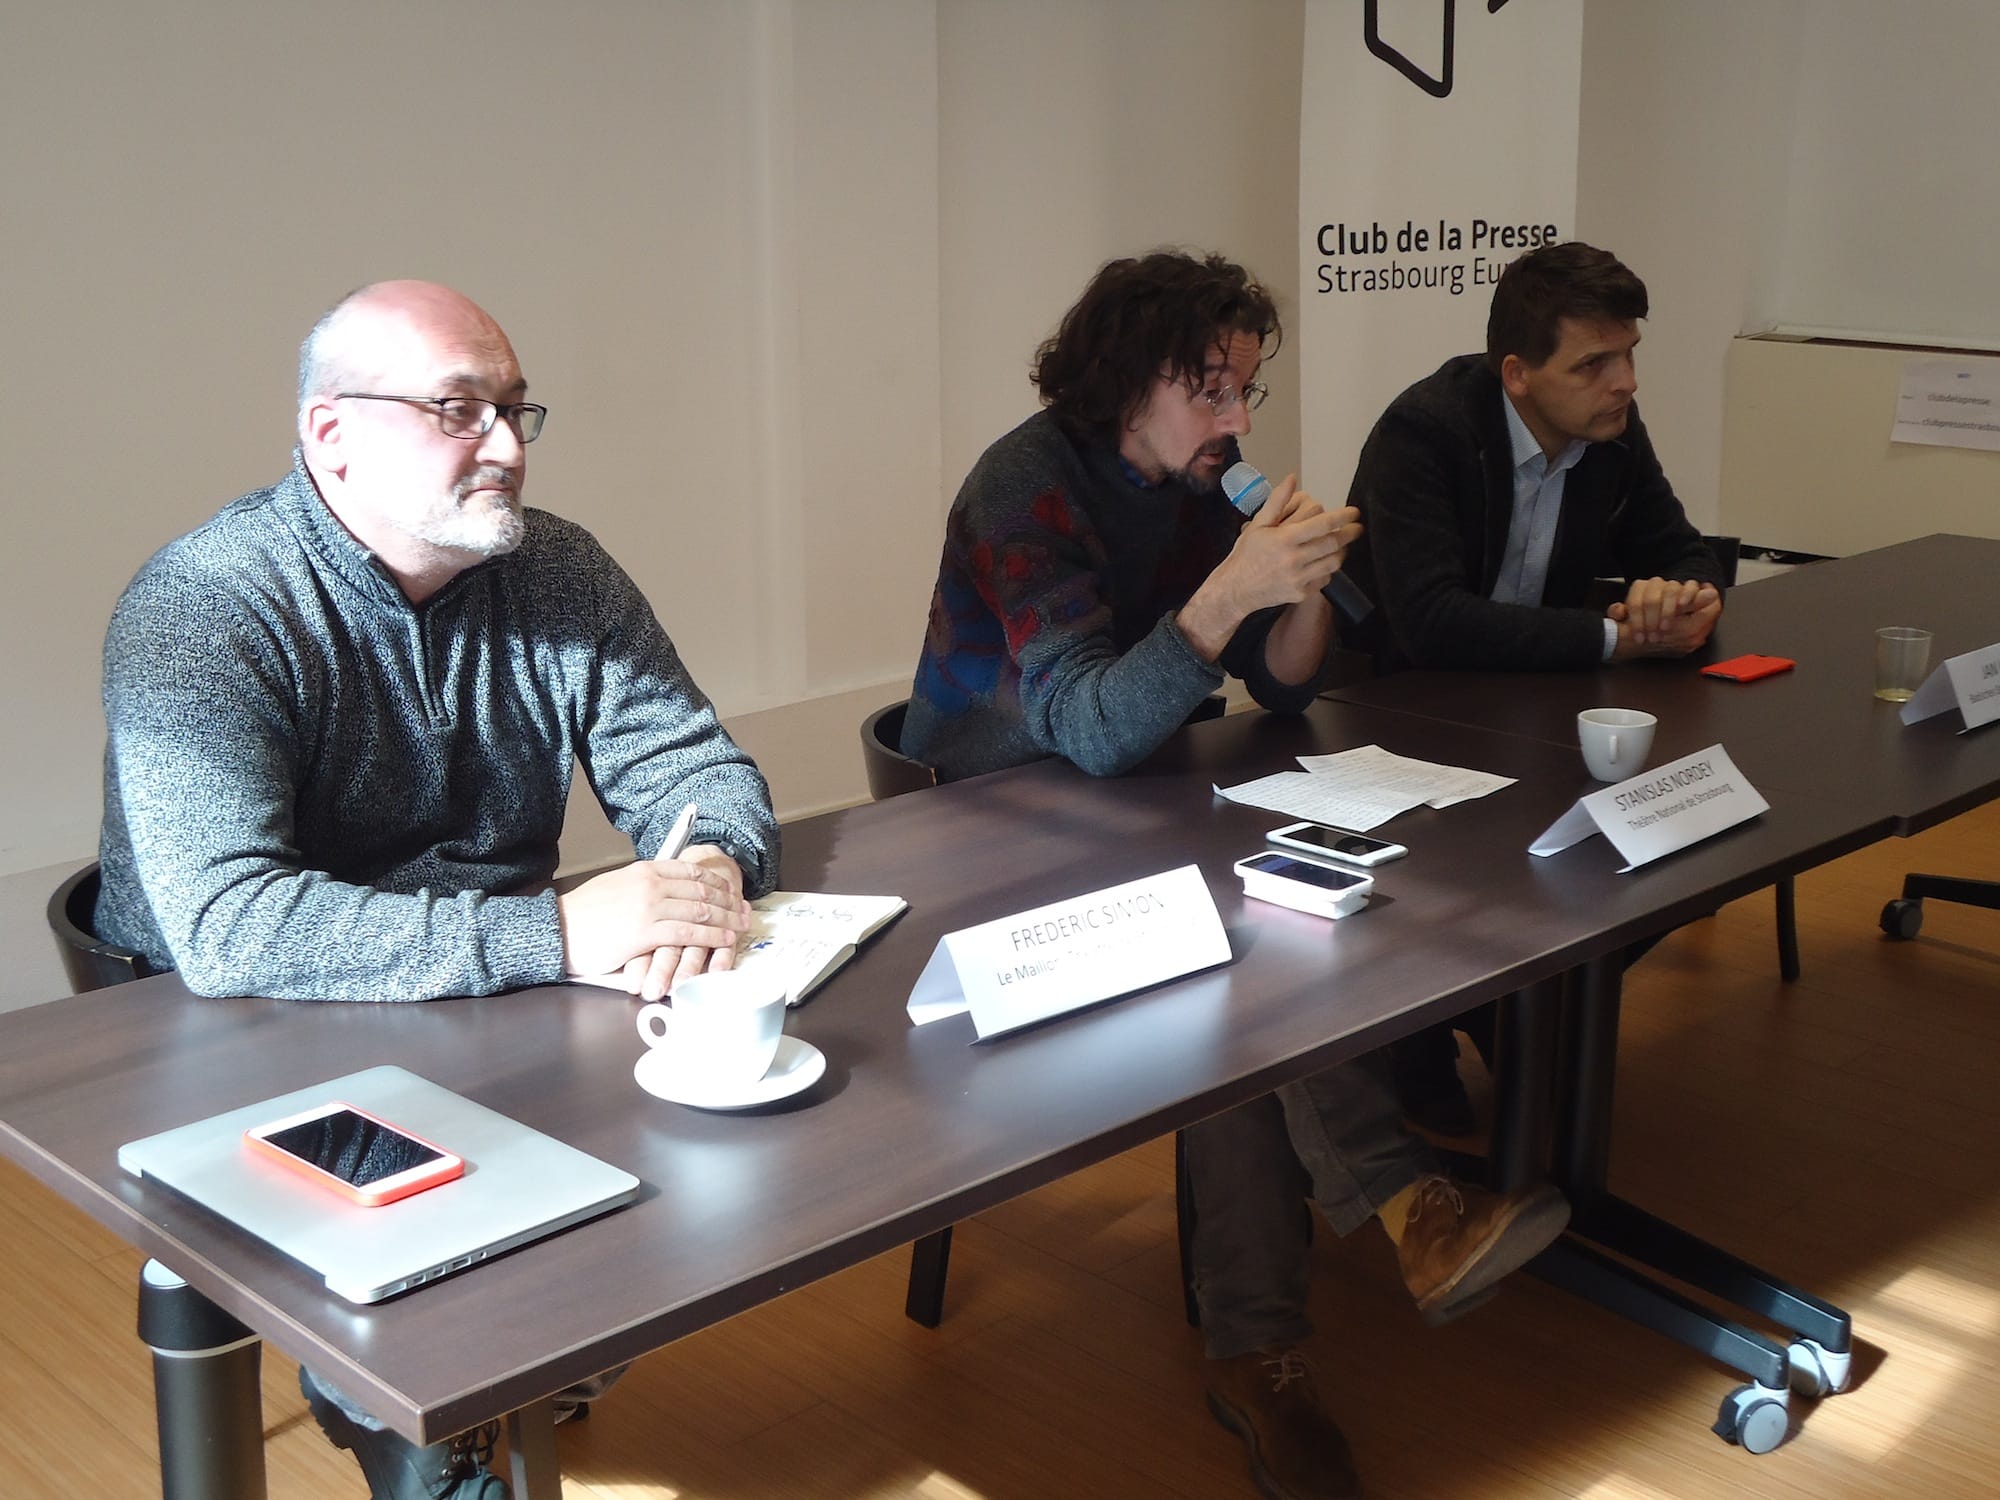 Conférence de presse autour du festival Premières au Club de la Presse, le 10 mars 2016 (Photo M. Bohner / Rue89 Strasbourg)